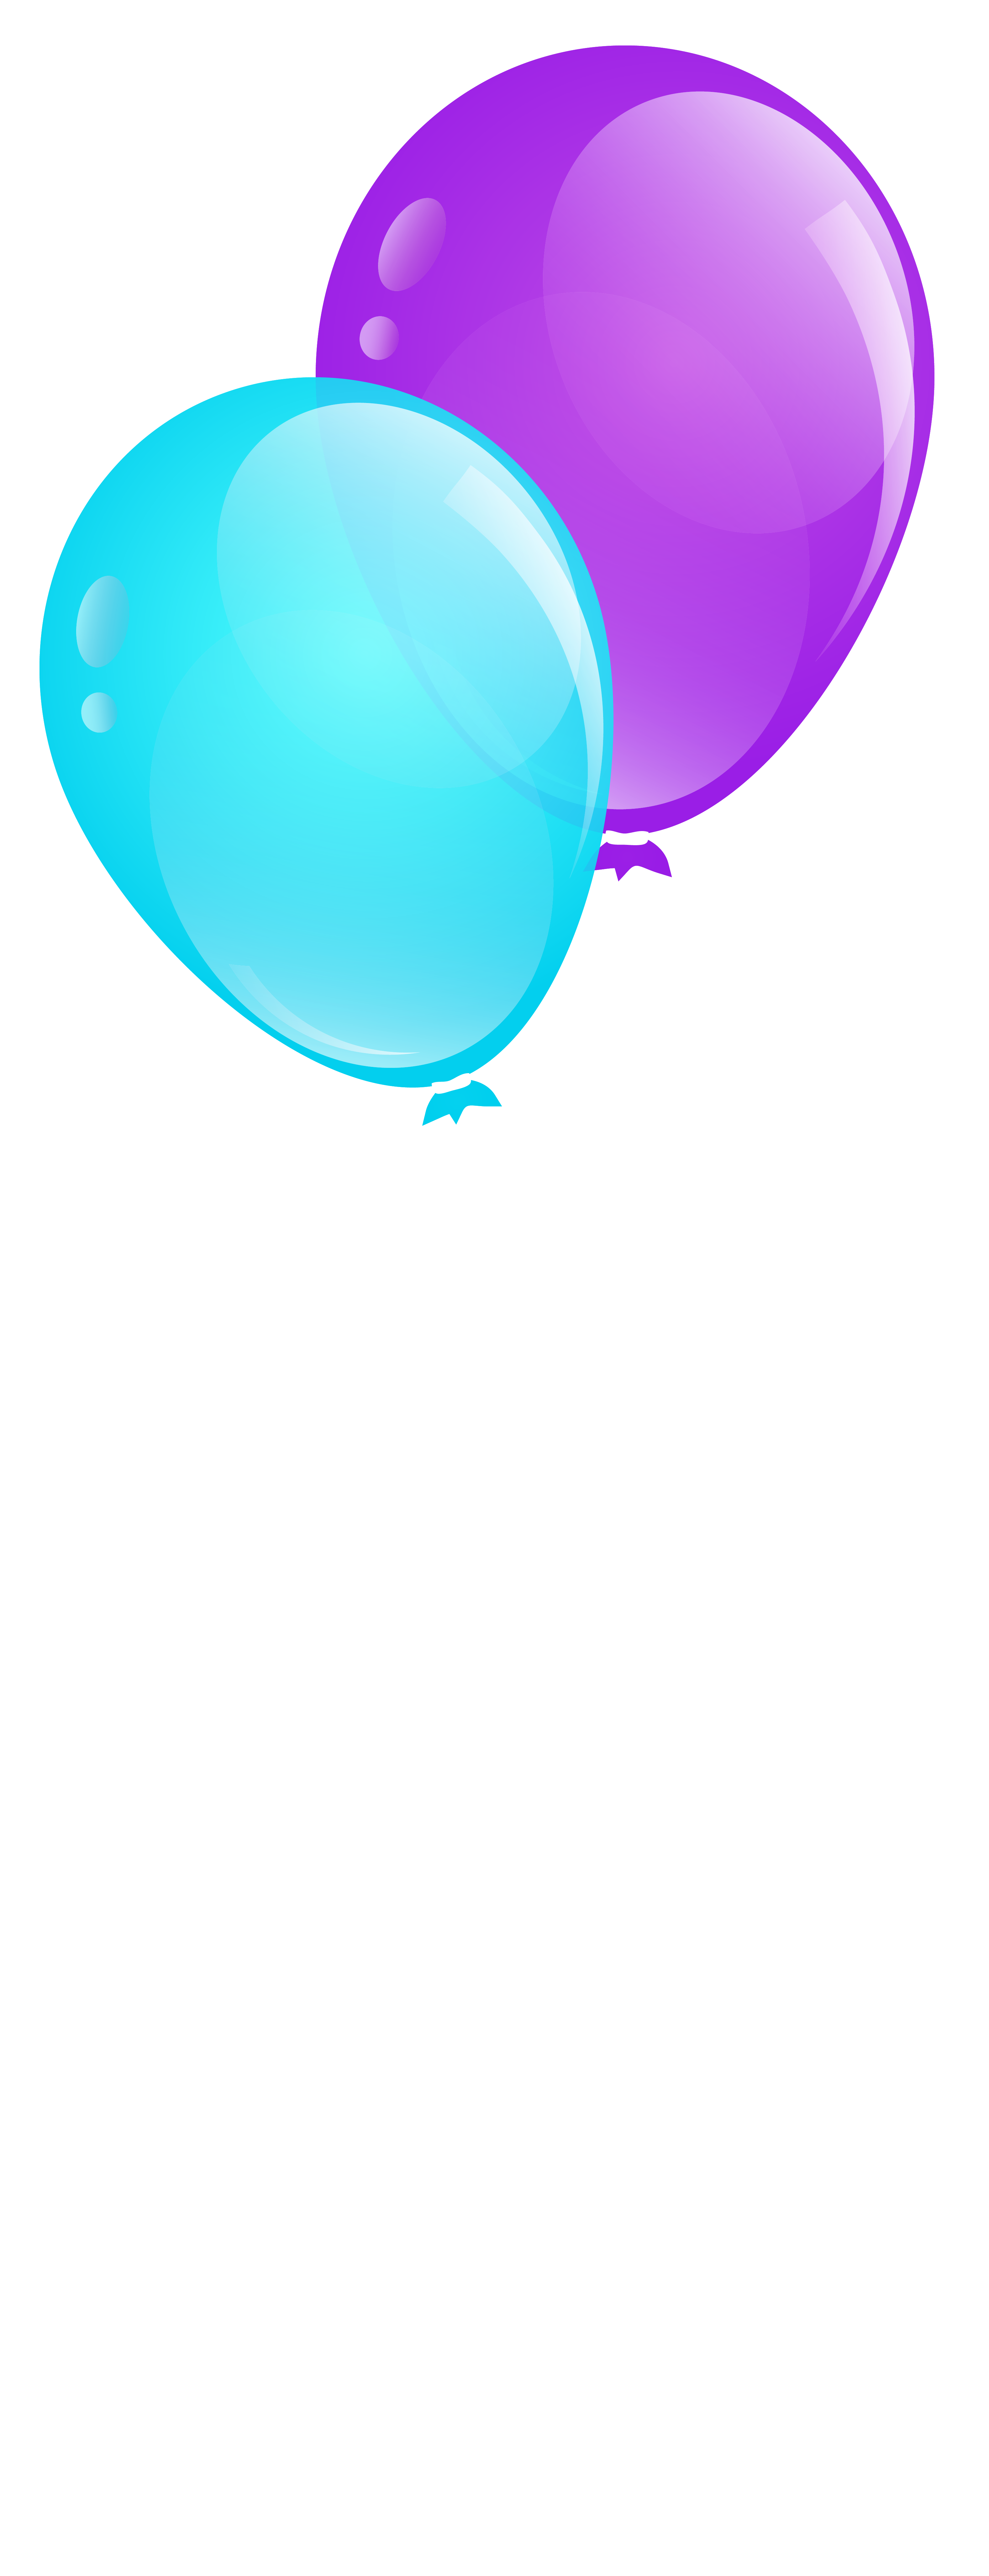 clipart purple balloons - photo #48